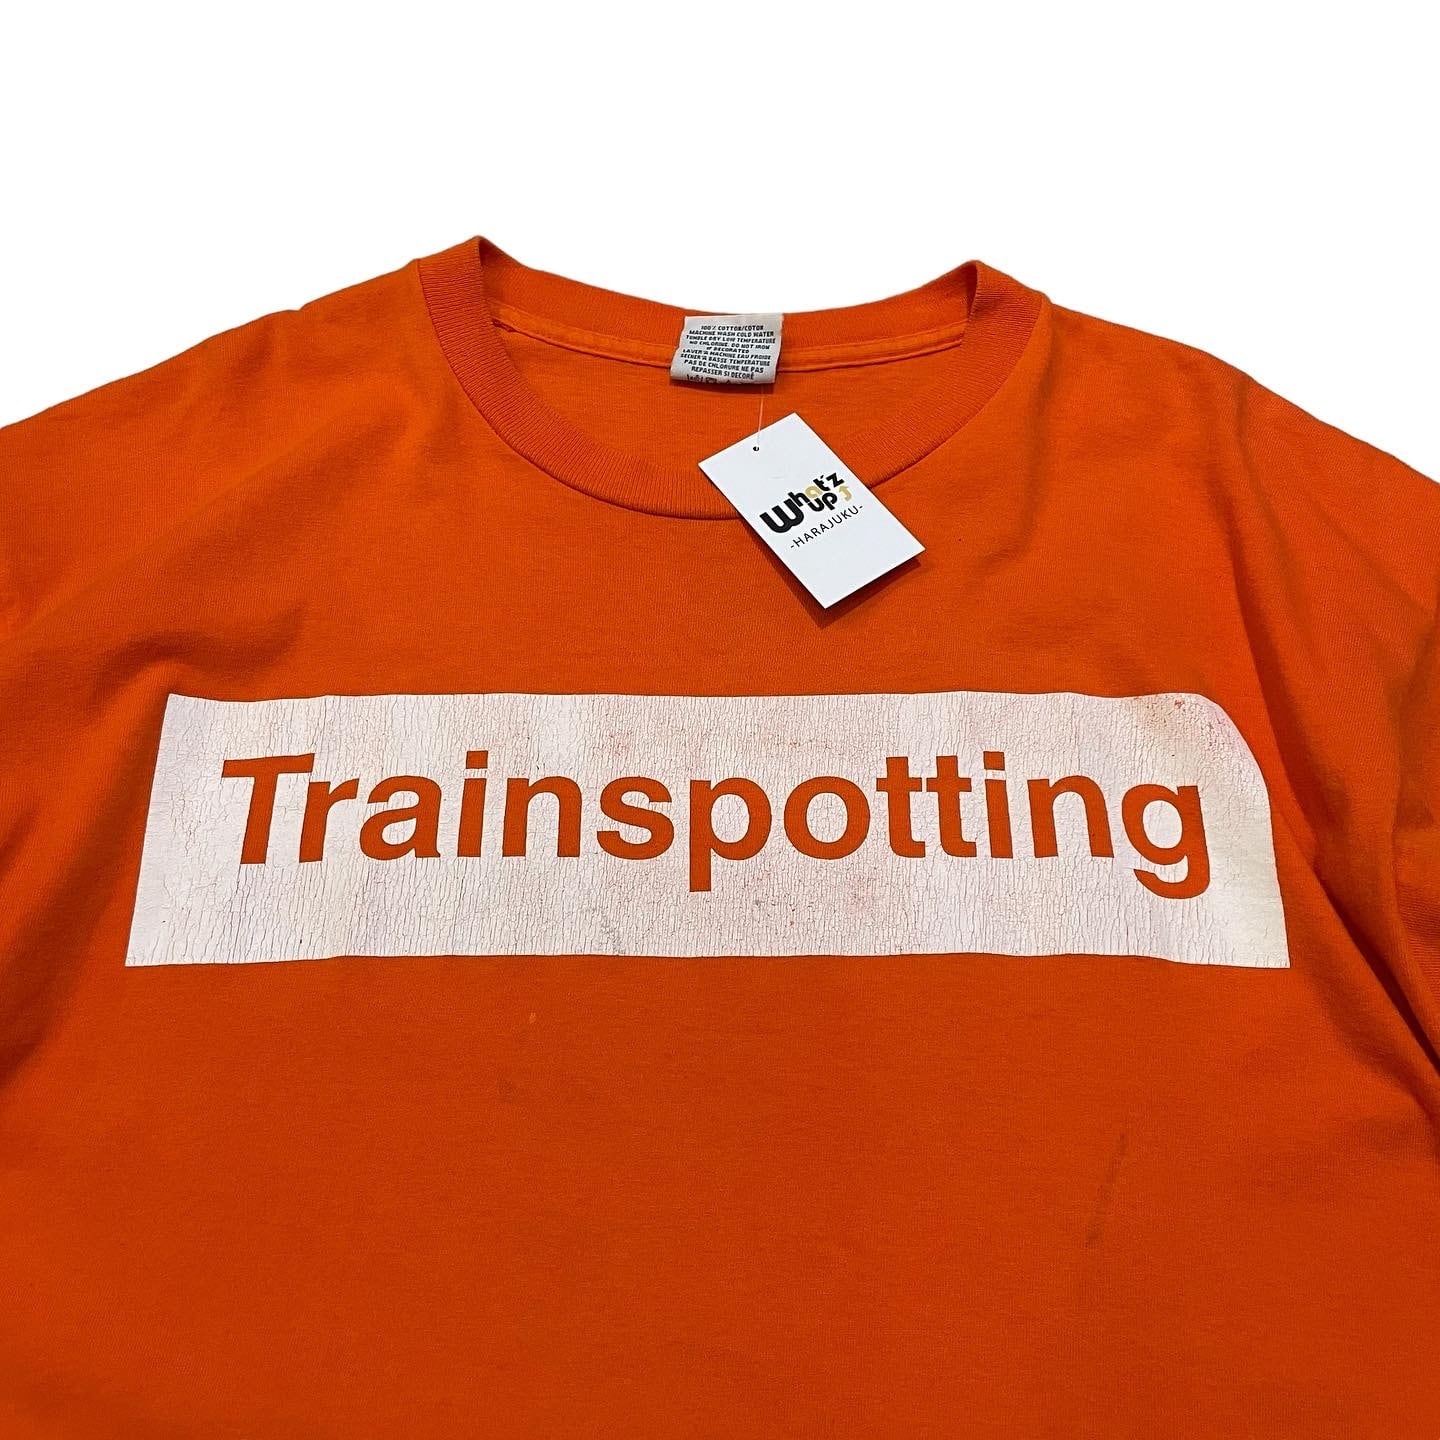 Trainspotting Tシャツ 96年 90s